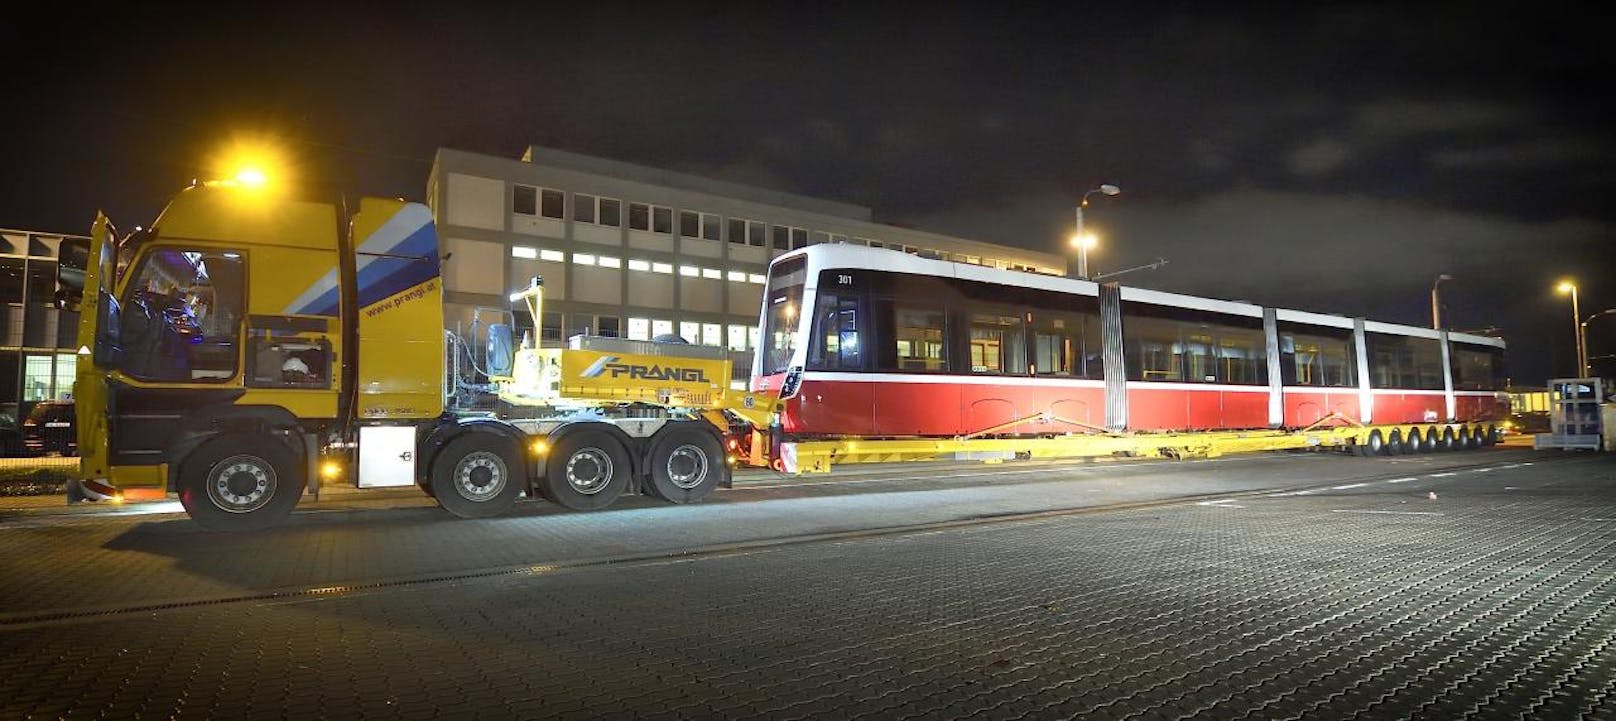 Flexity - die neue Straßenbahn für Wien. (Foto: Johannes Zinner)